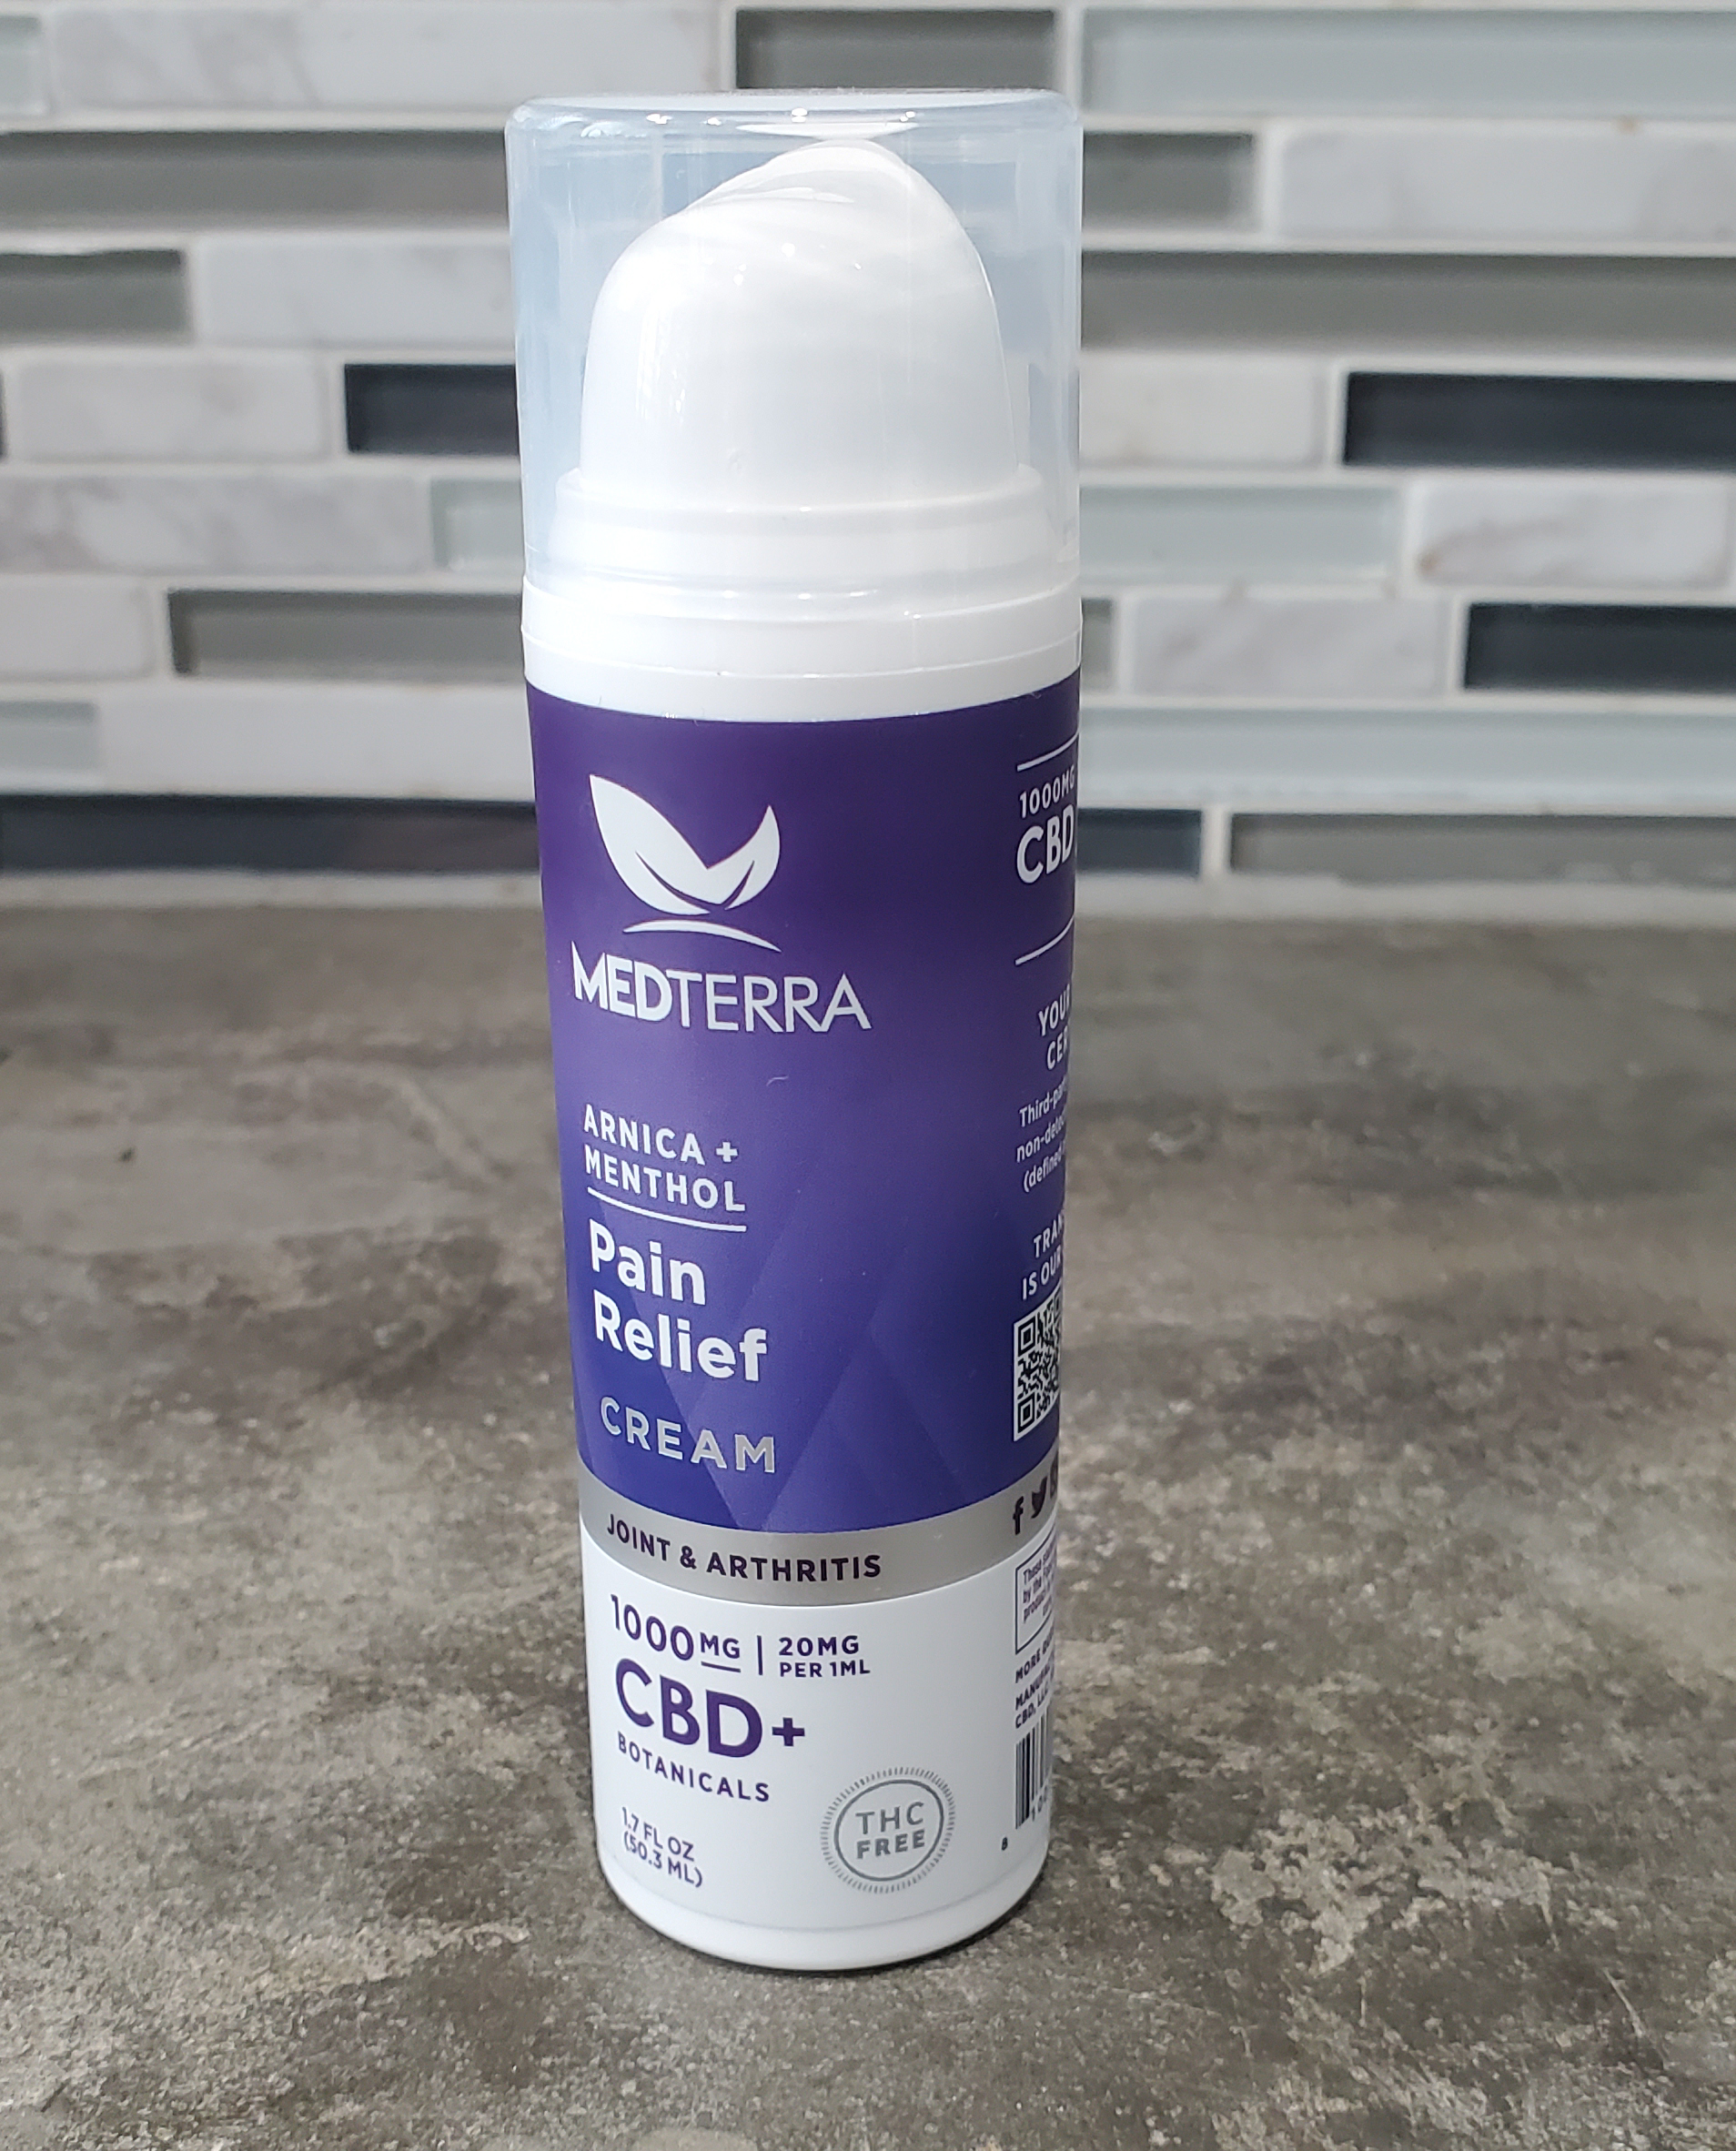 Medterra pain relief CBD cream